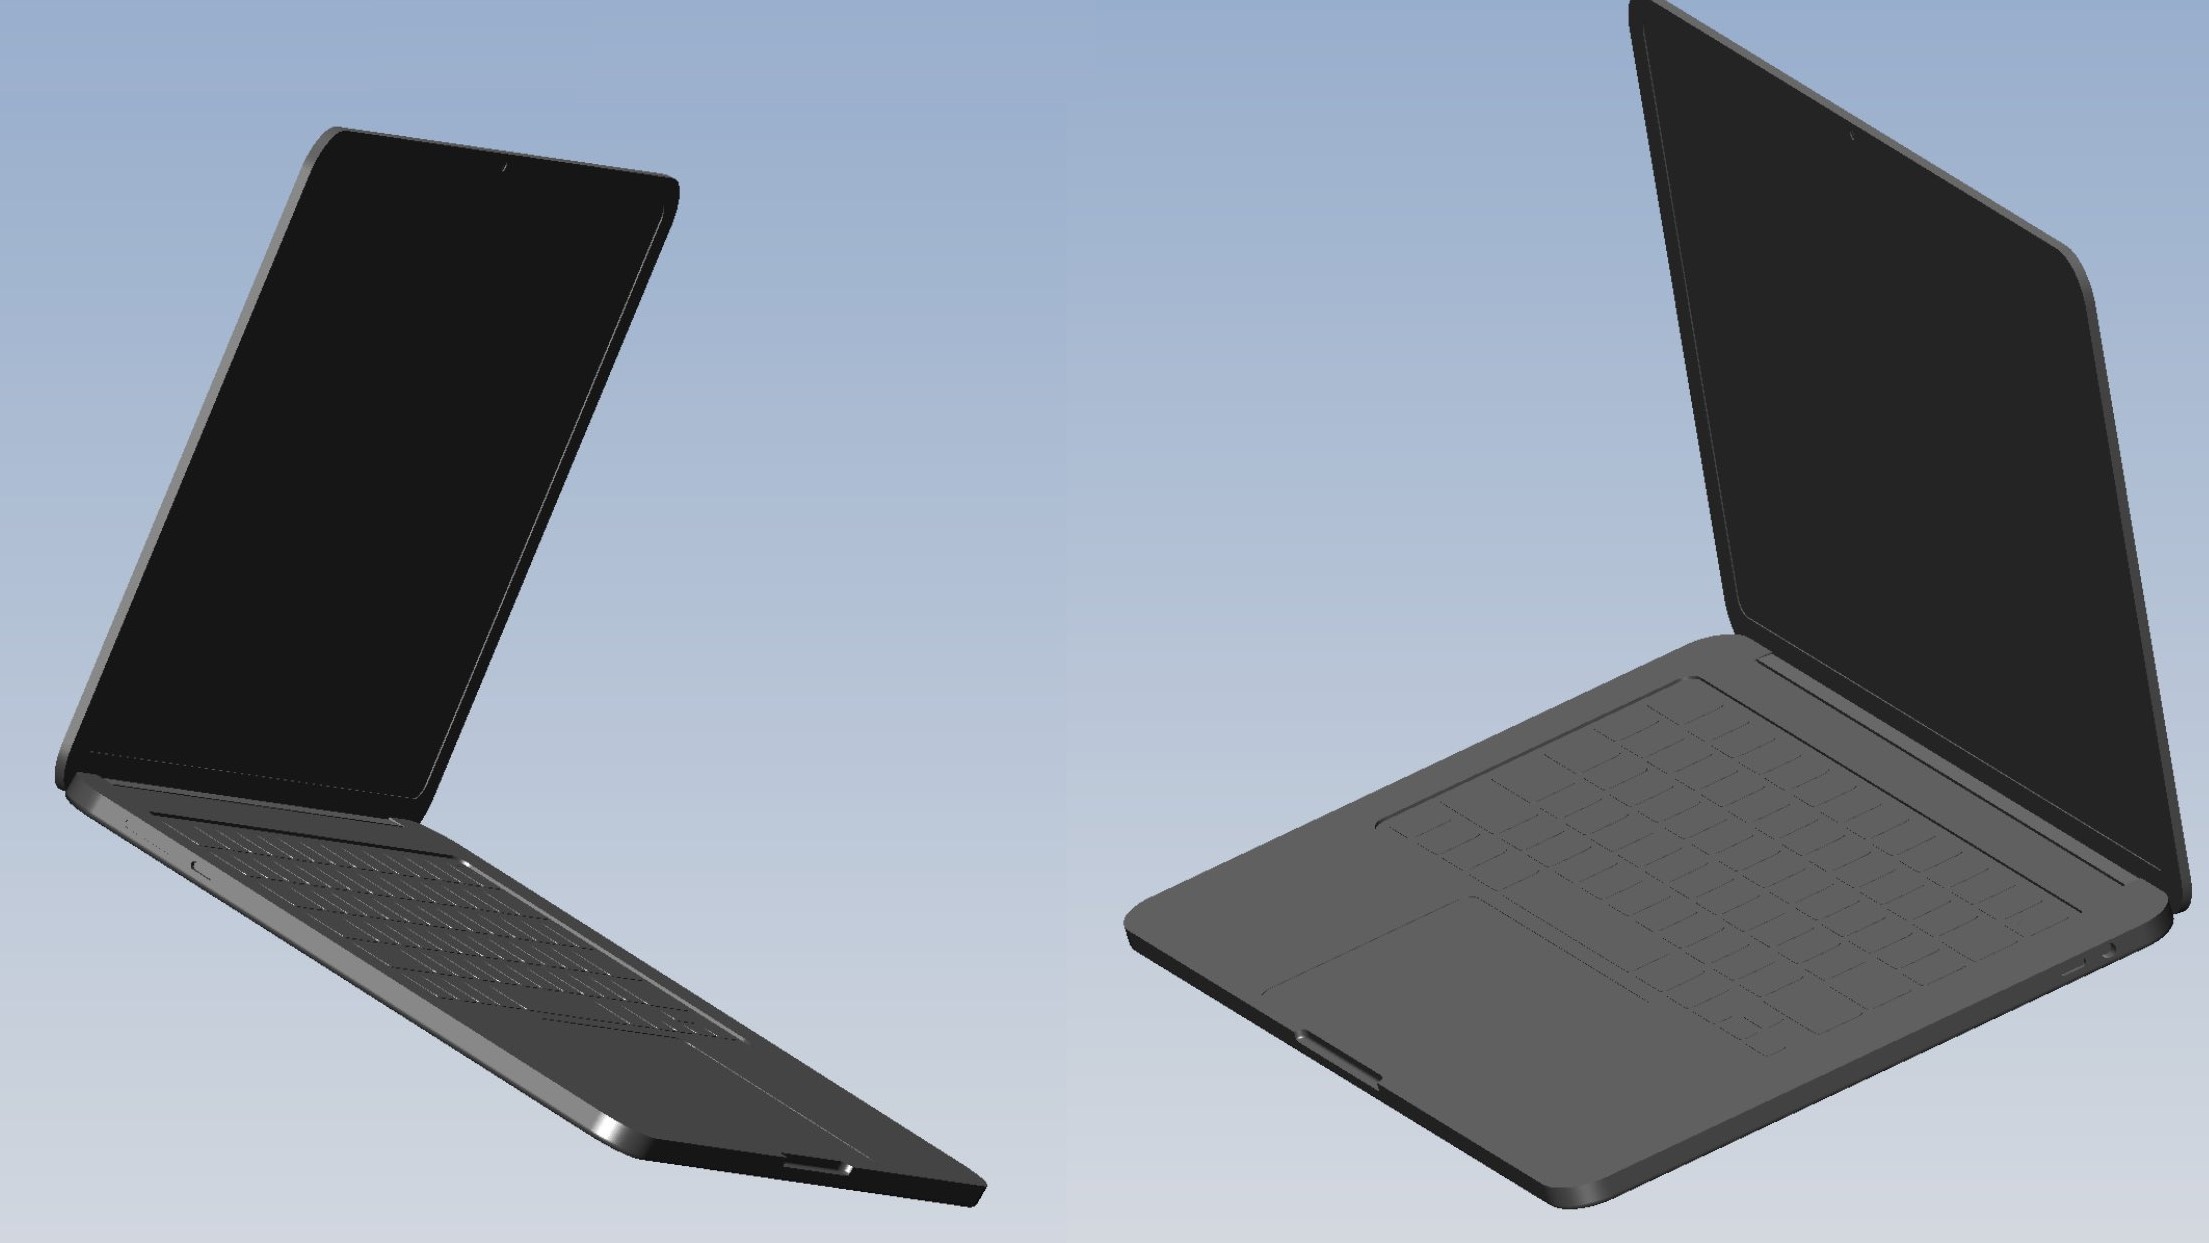 CAD-based renders of the 2022 MacBook Air